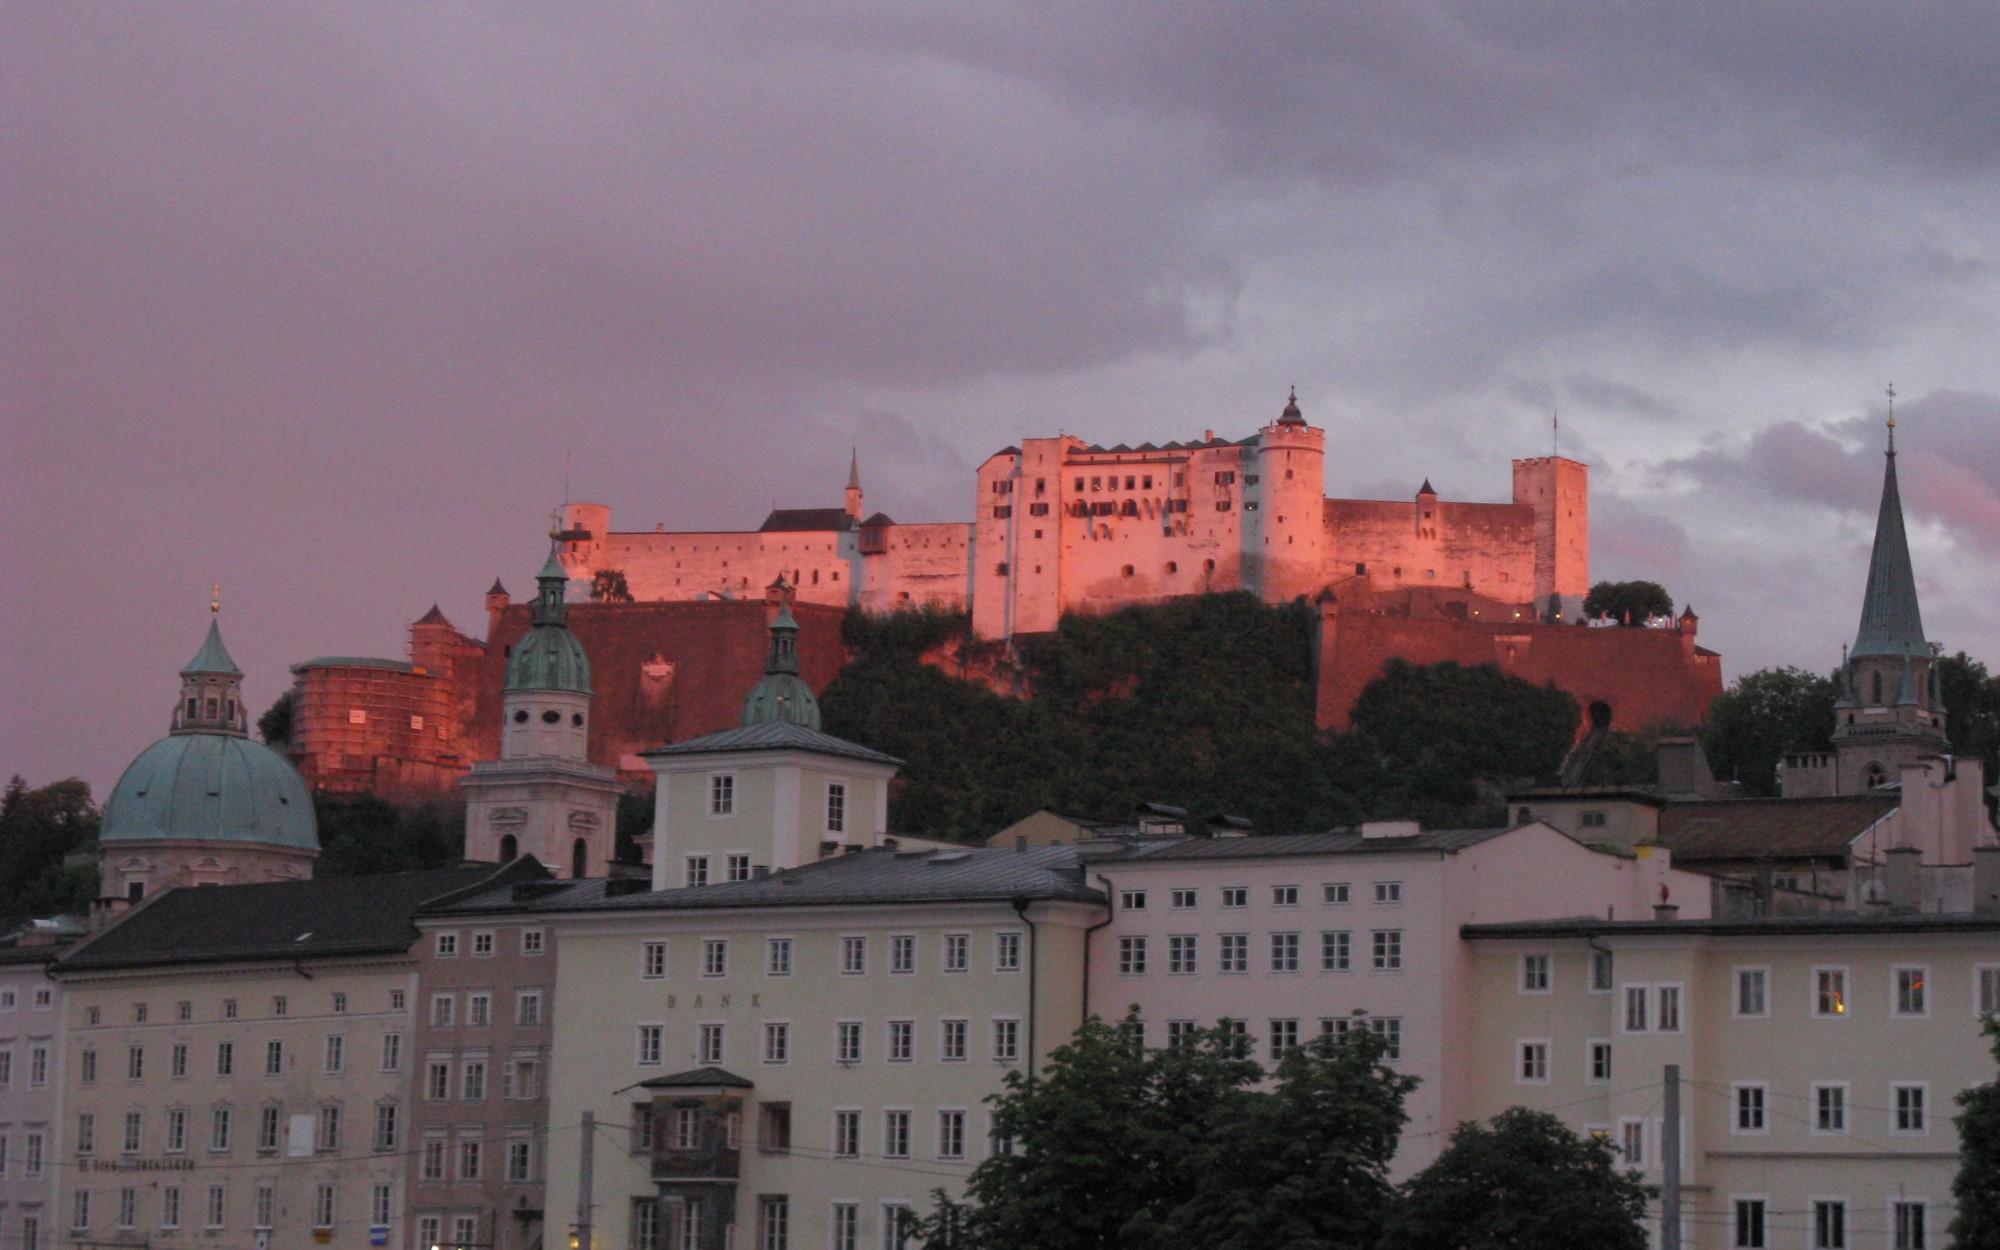 Immobilien - Hotelprojekt in Bestlage zu kaufen in Salzburg, Salzburg